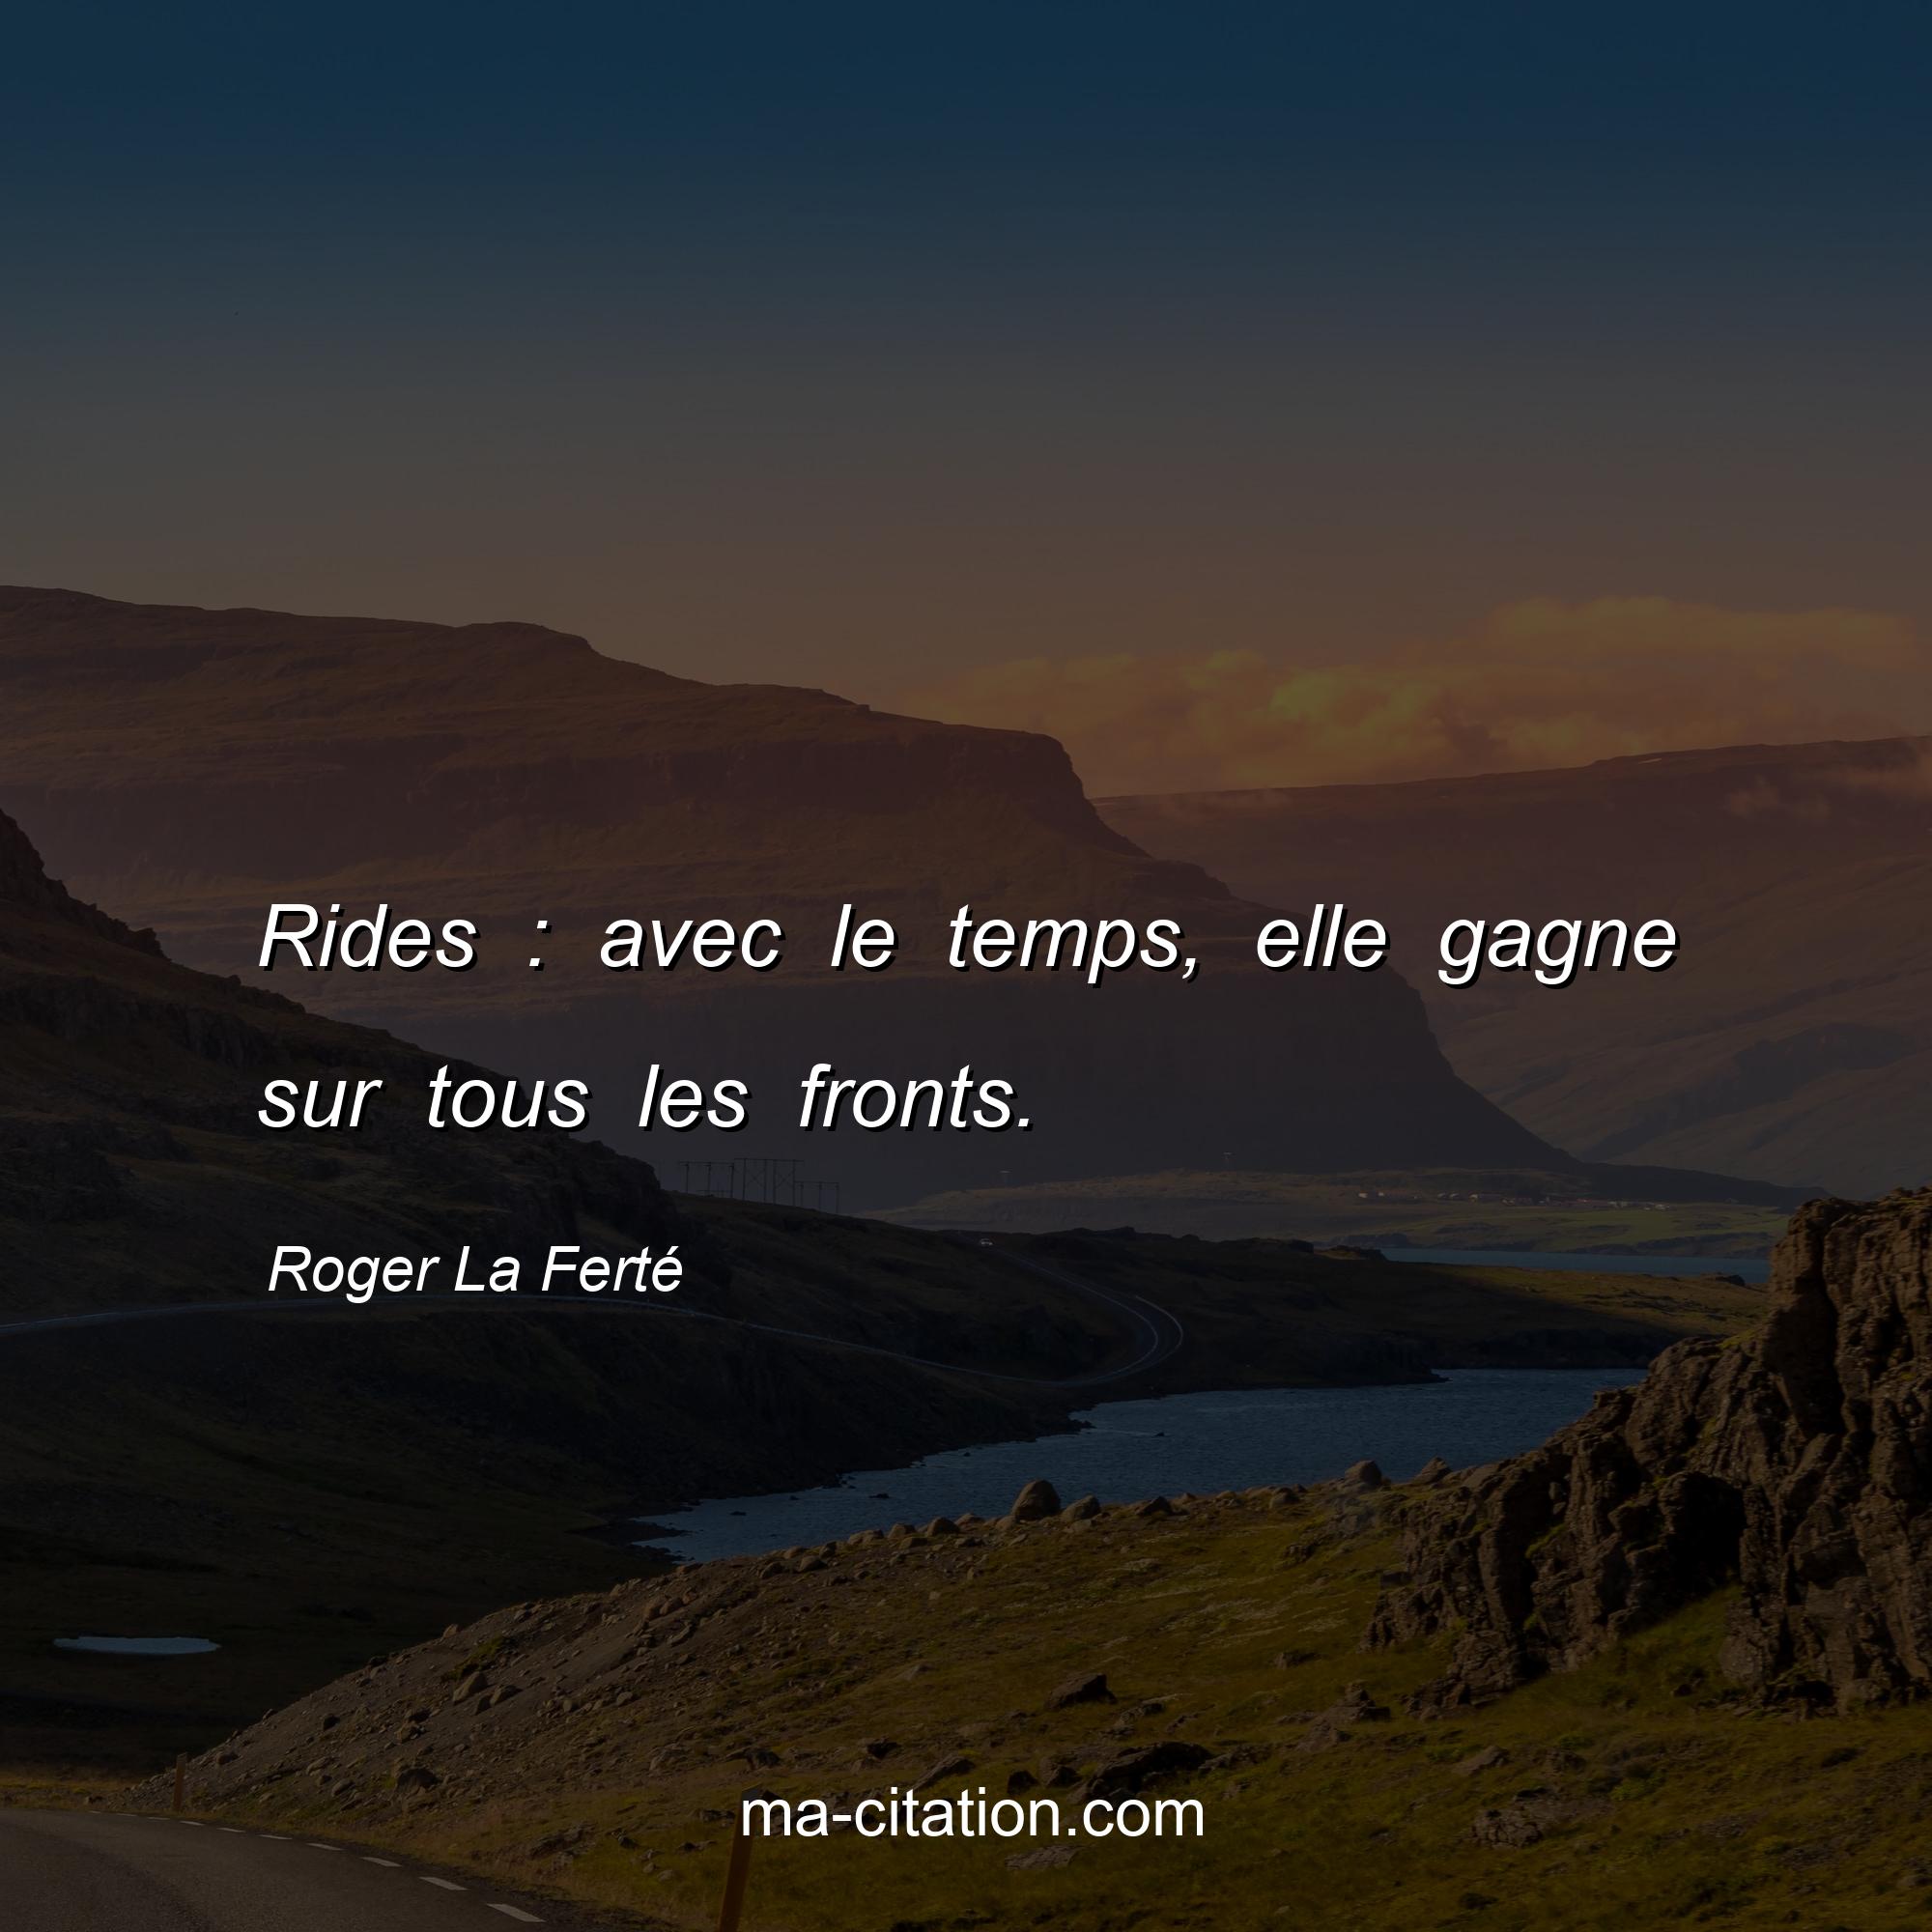 Roger La Ferté : Rides : avec le temps, elle gagne sur tous les fronts.